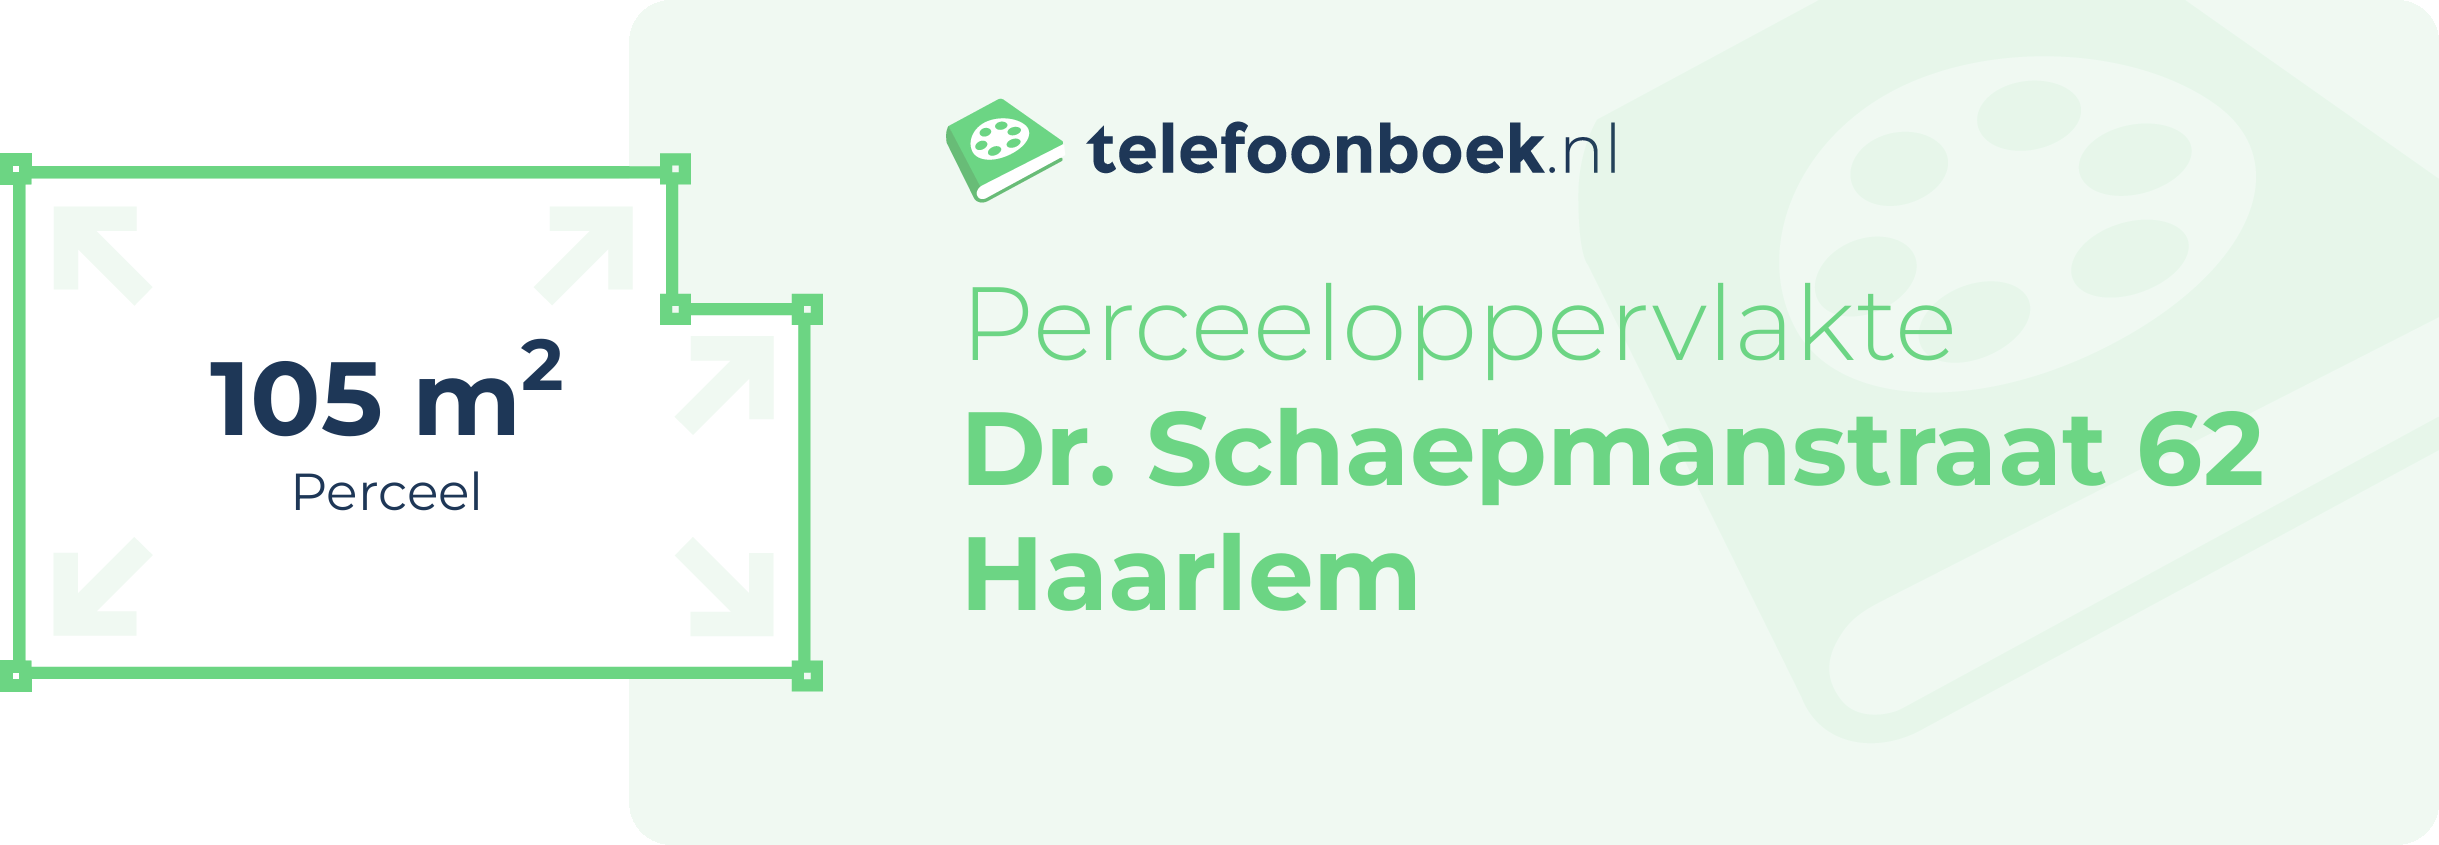 Perceeloppervlakte Dr. Schaepmanstraat 62 Haarlem